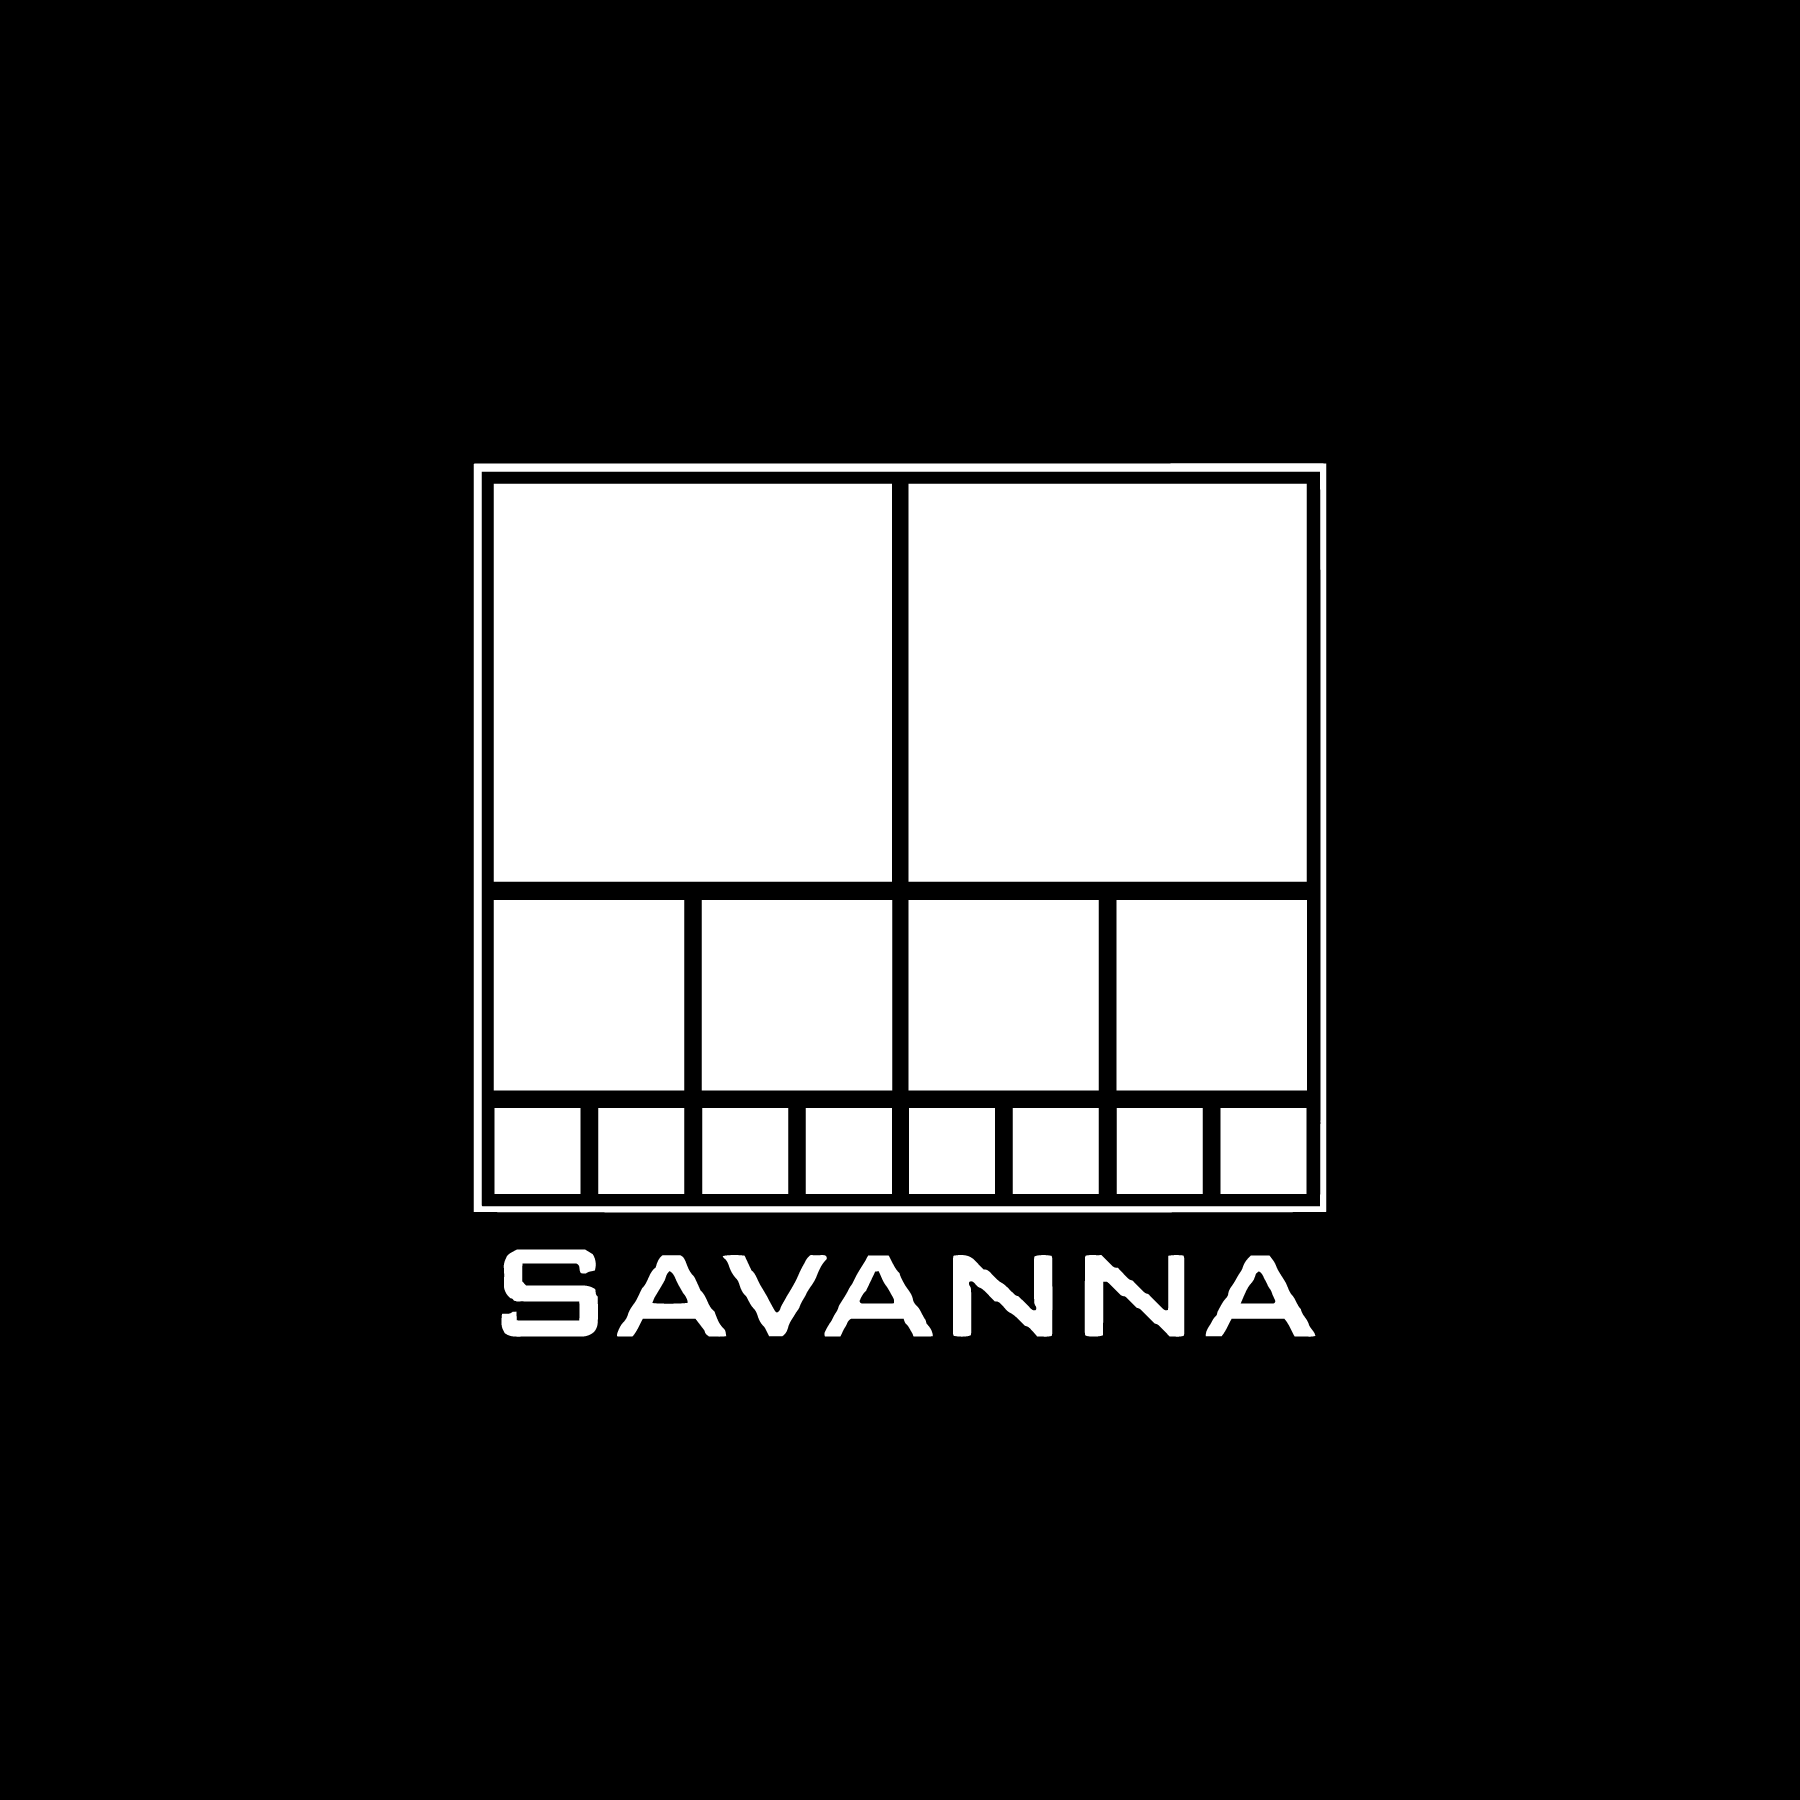 Savanna B&W.png